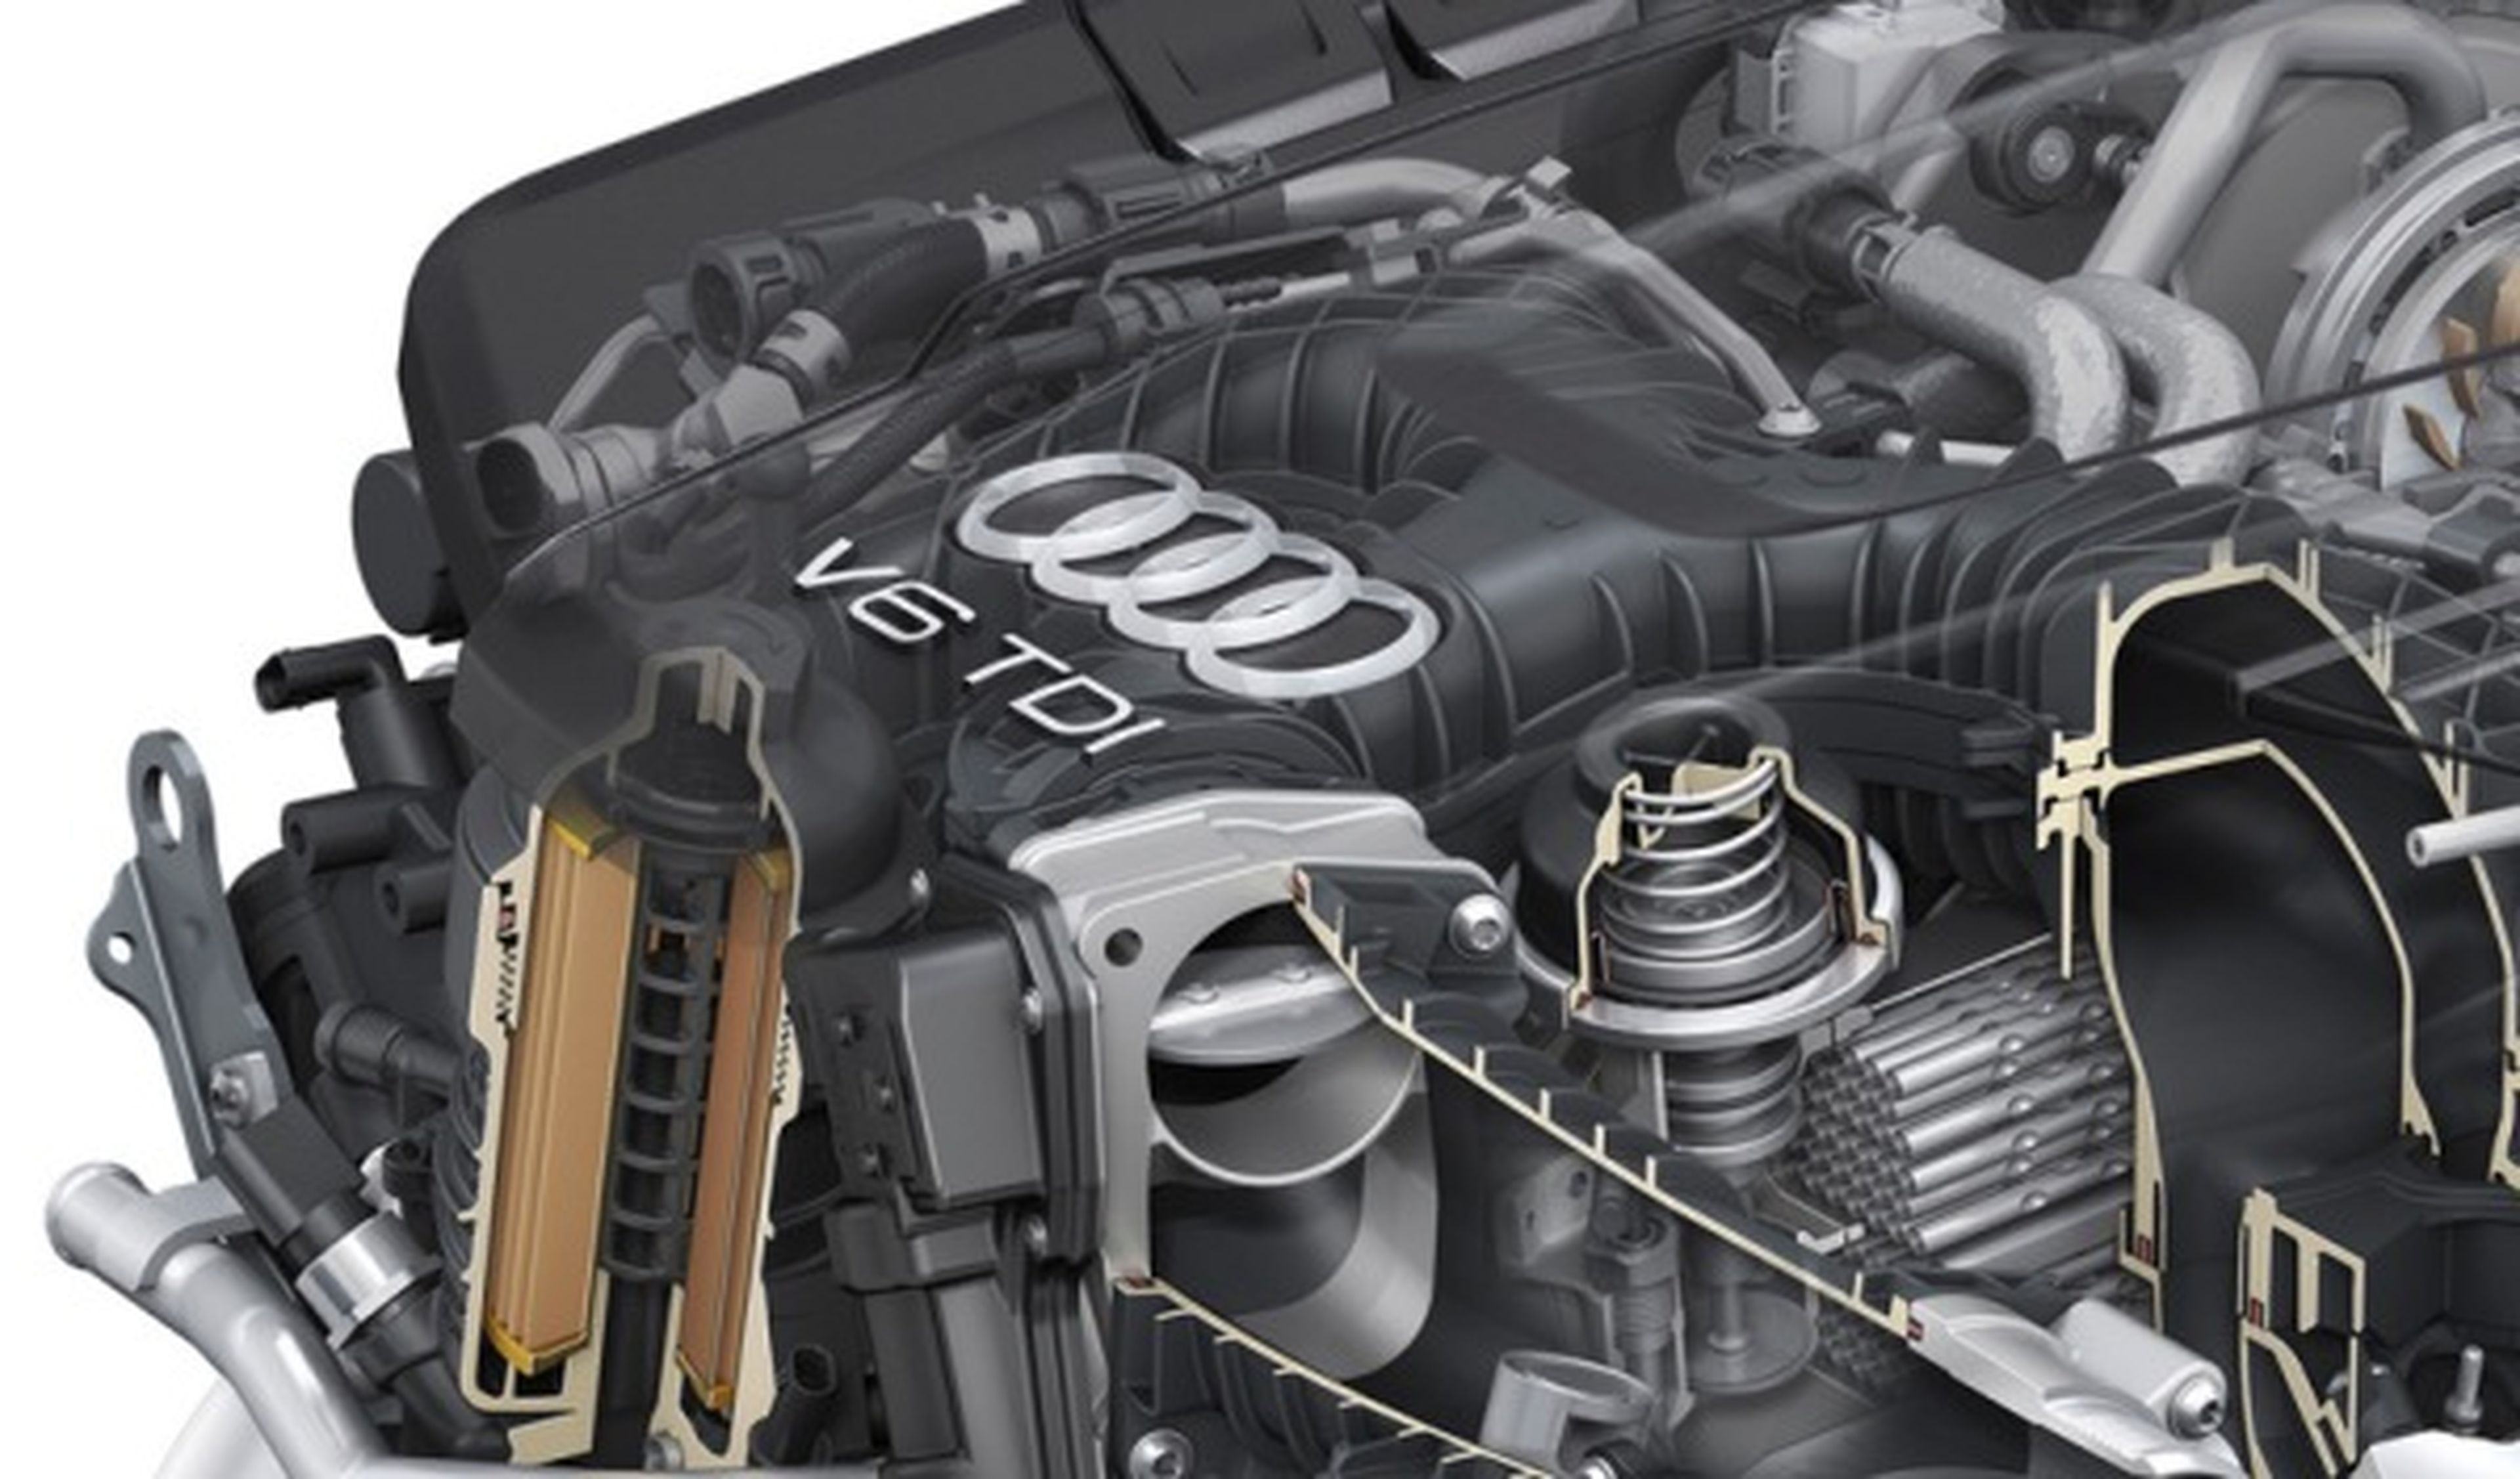 Audi presenta el nuevo motor V6 3.0 TDI